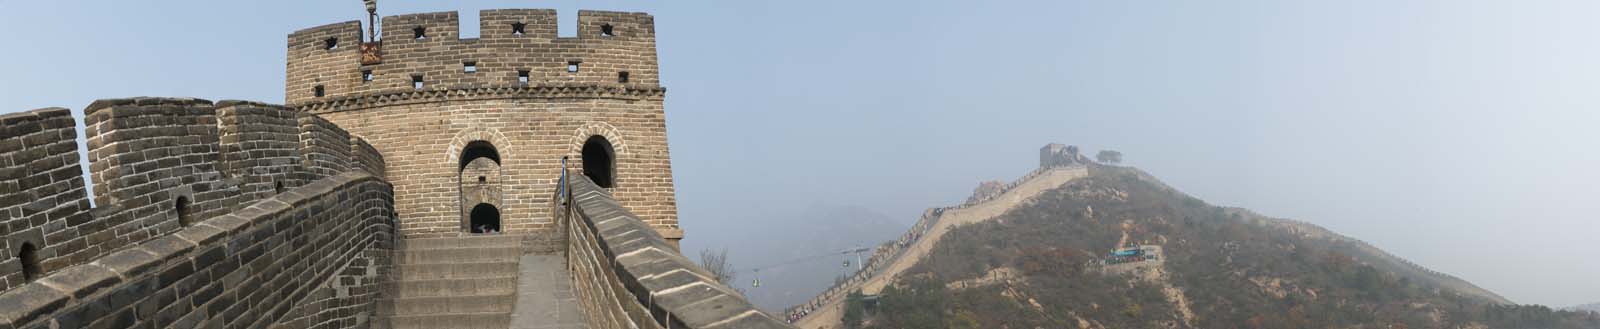 photo, la matire, libre, amnage, dcrivez, photo de la rserve,Panorama Grande Muraille, Murs, Chteau Lou, Xiongnu, Empereur Guangwu de Han